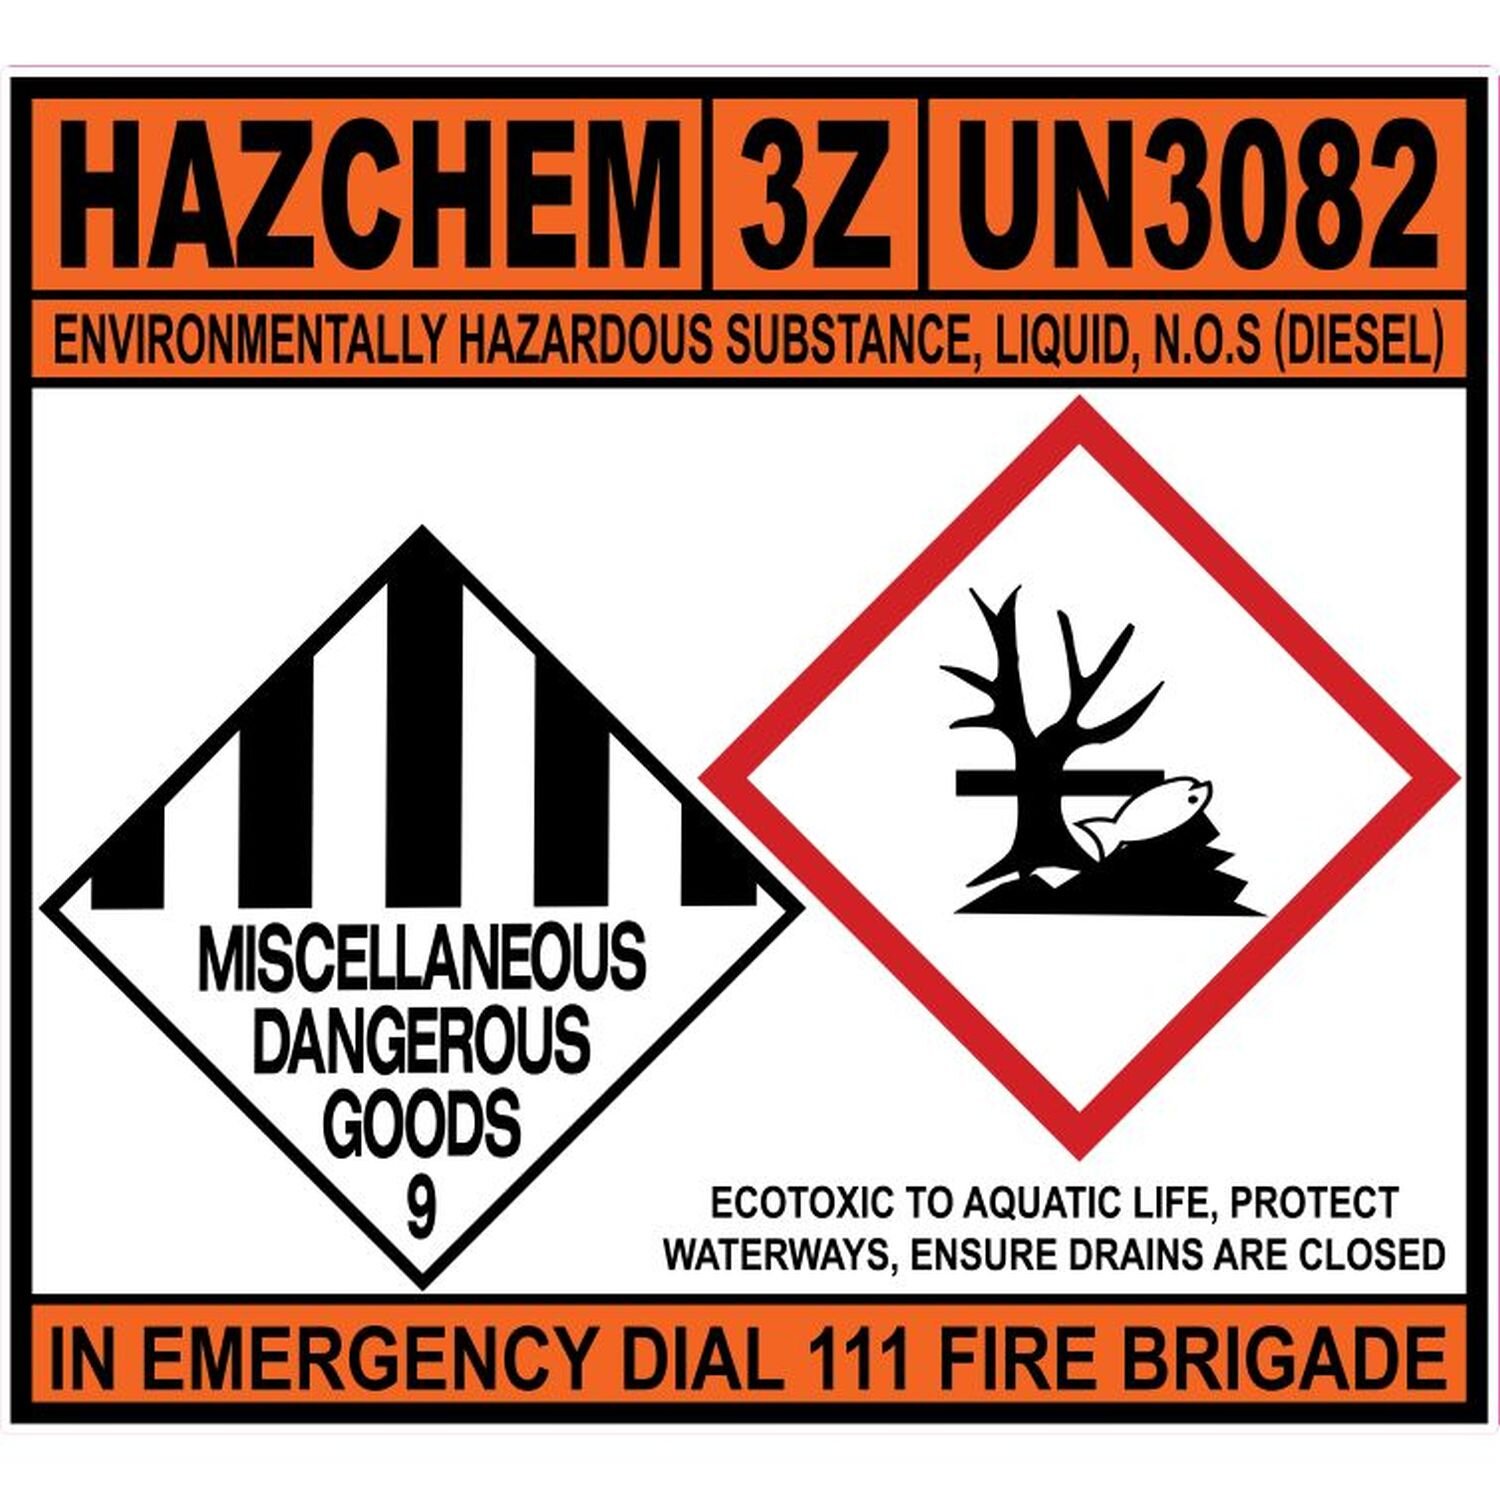 Hazchem 3Z UN3082 NOS Diesel SAV-680x620mm